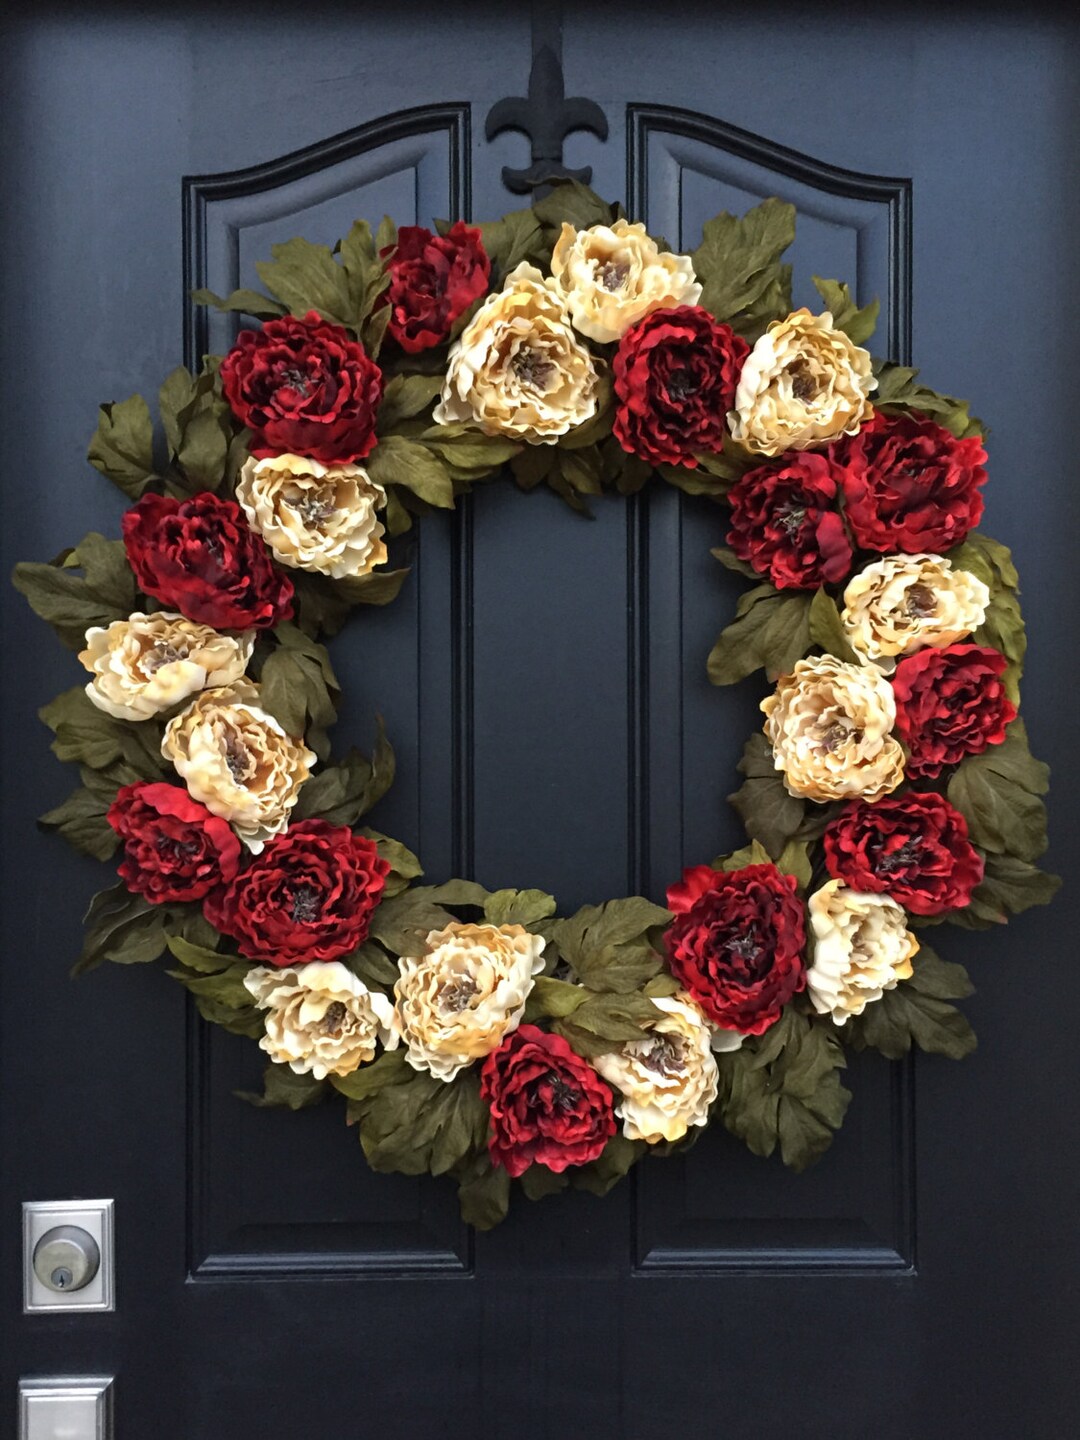 BEST SELLER Valentine's Day Wreaths, Front Door Heart Wreath